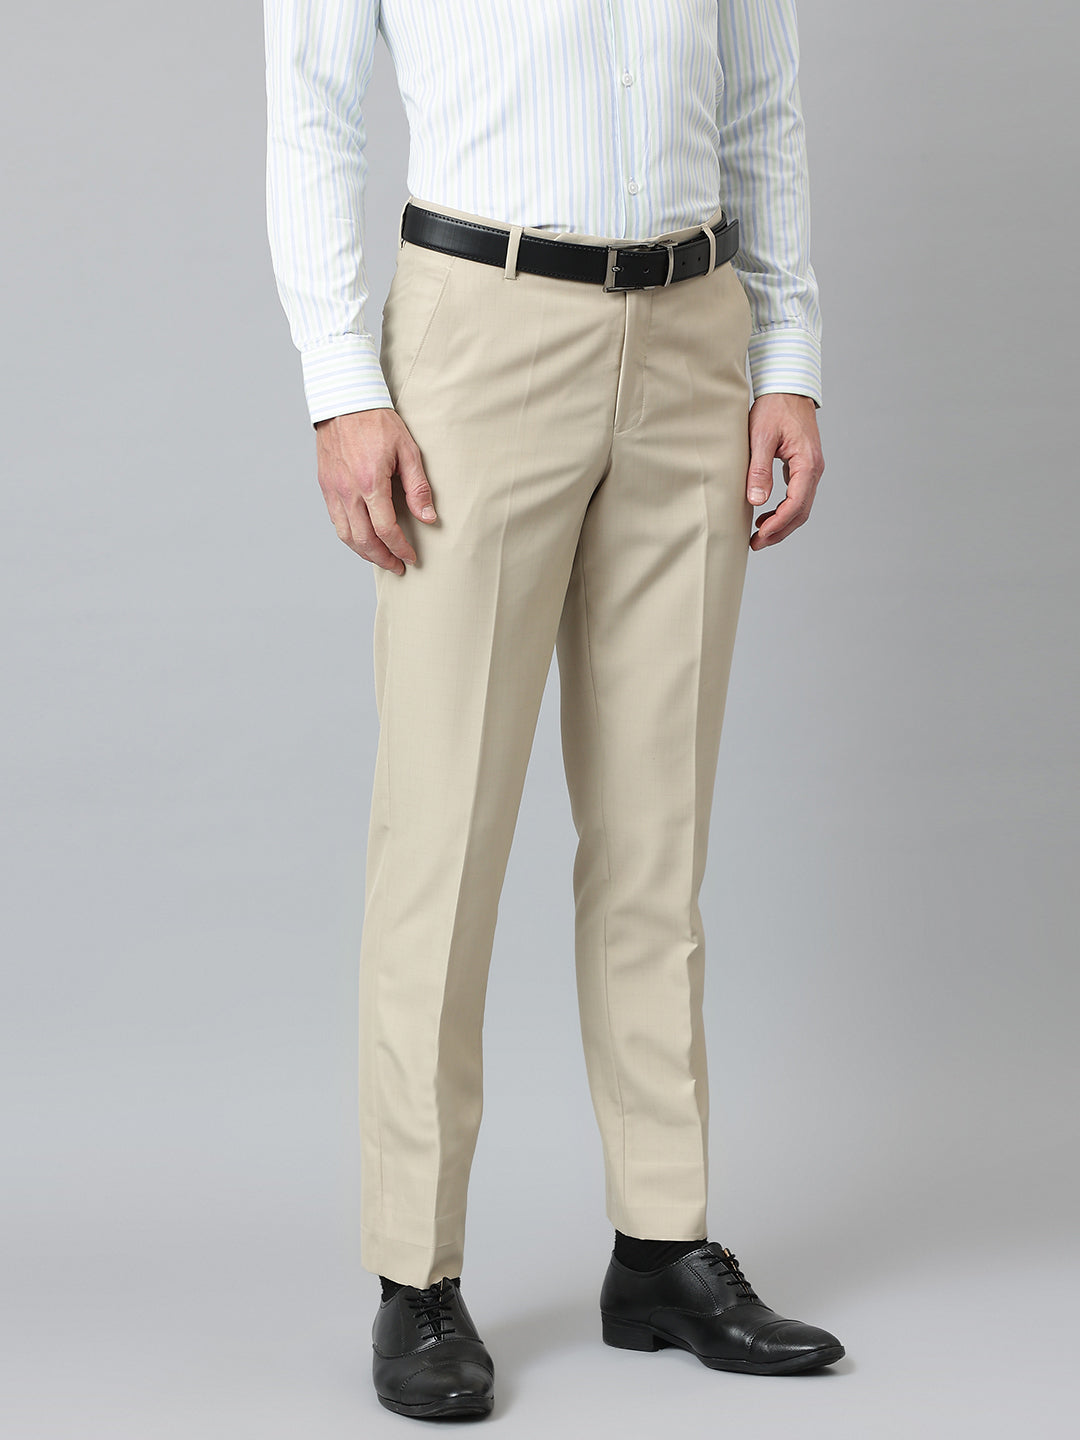 Cotton Khaki Men Formal Pants